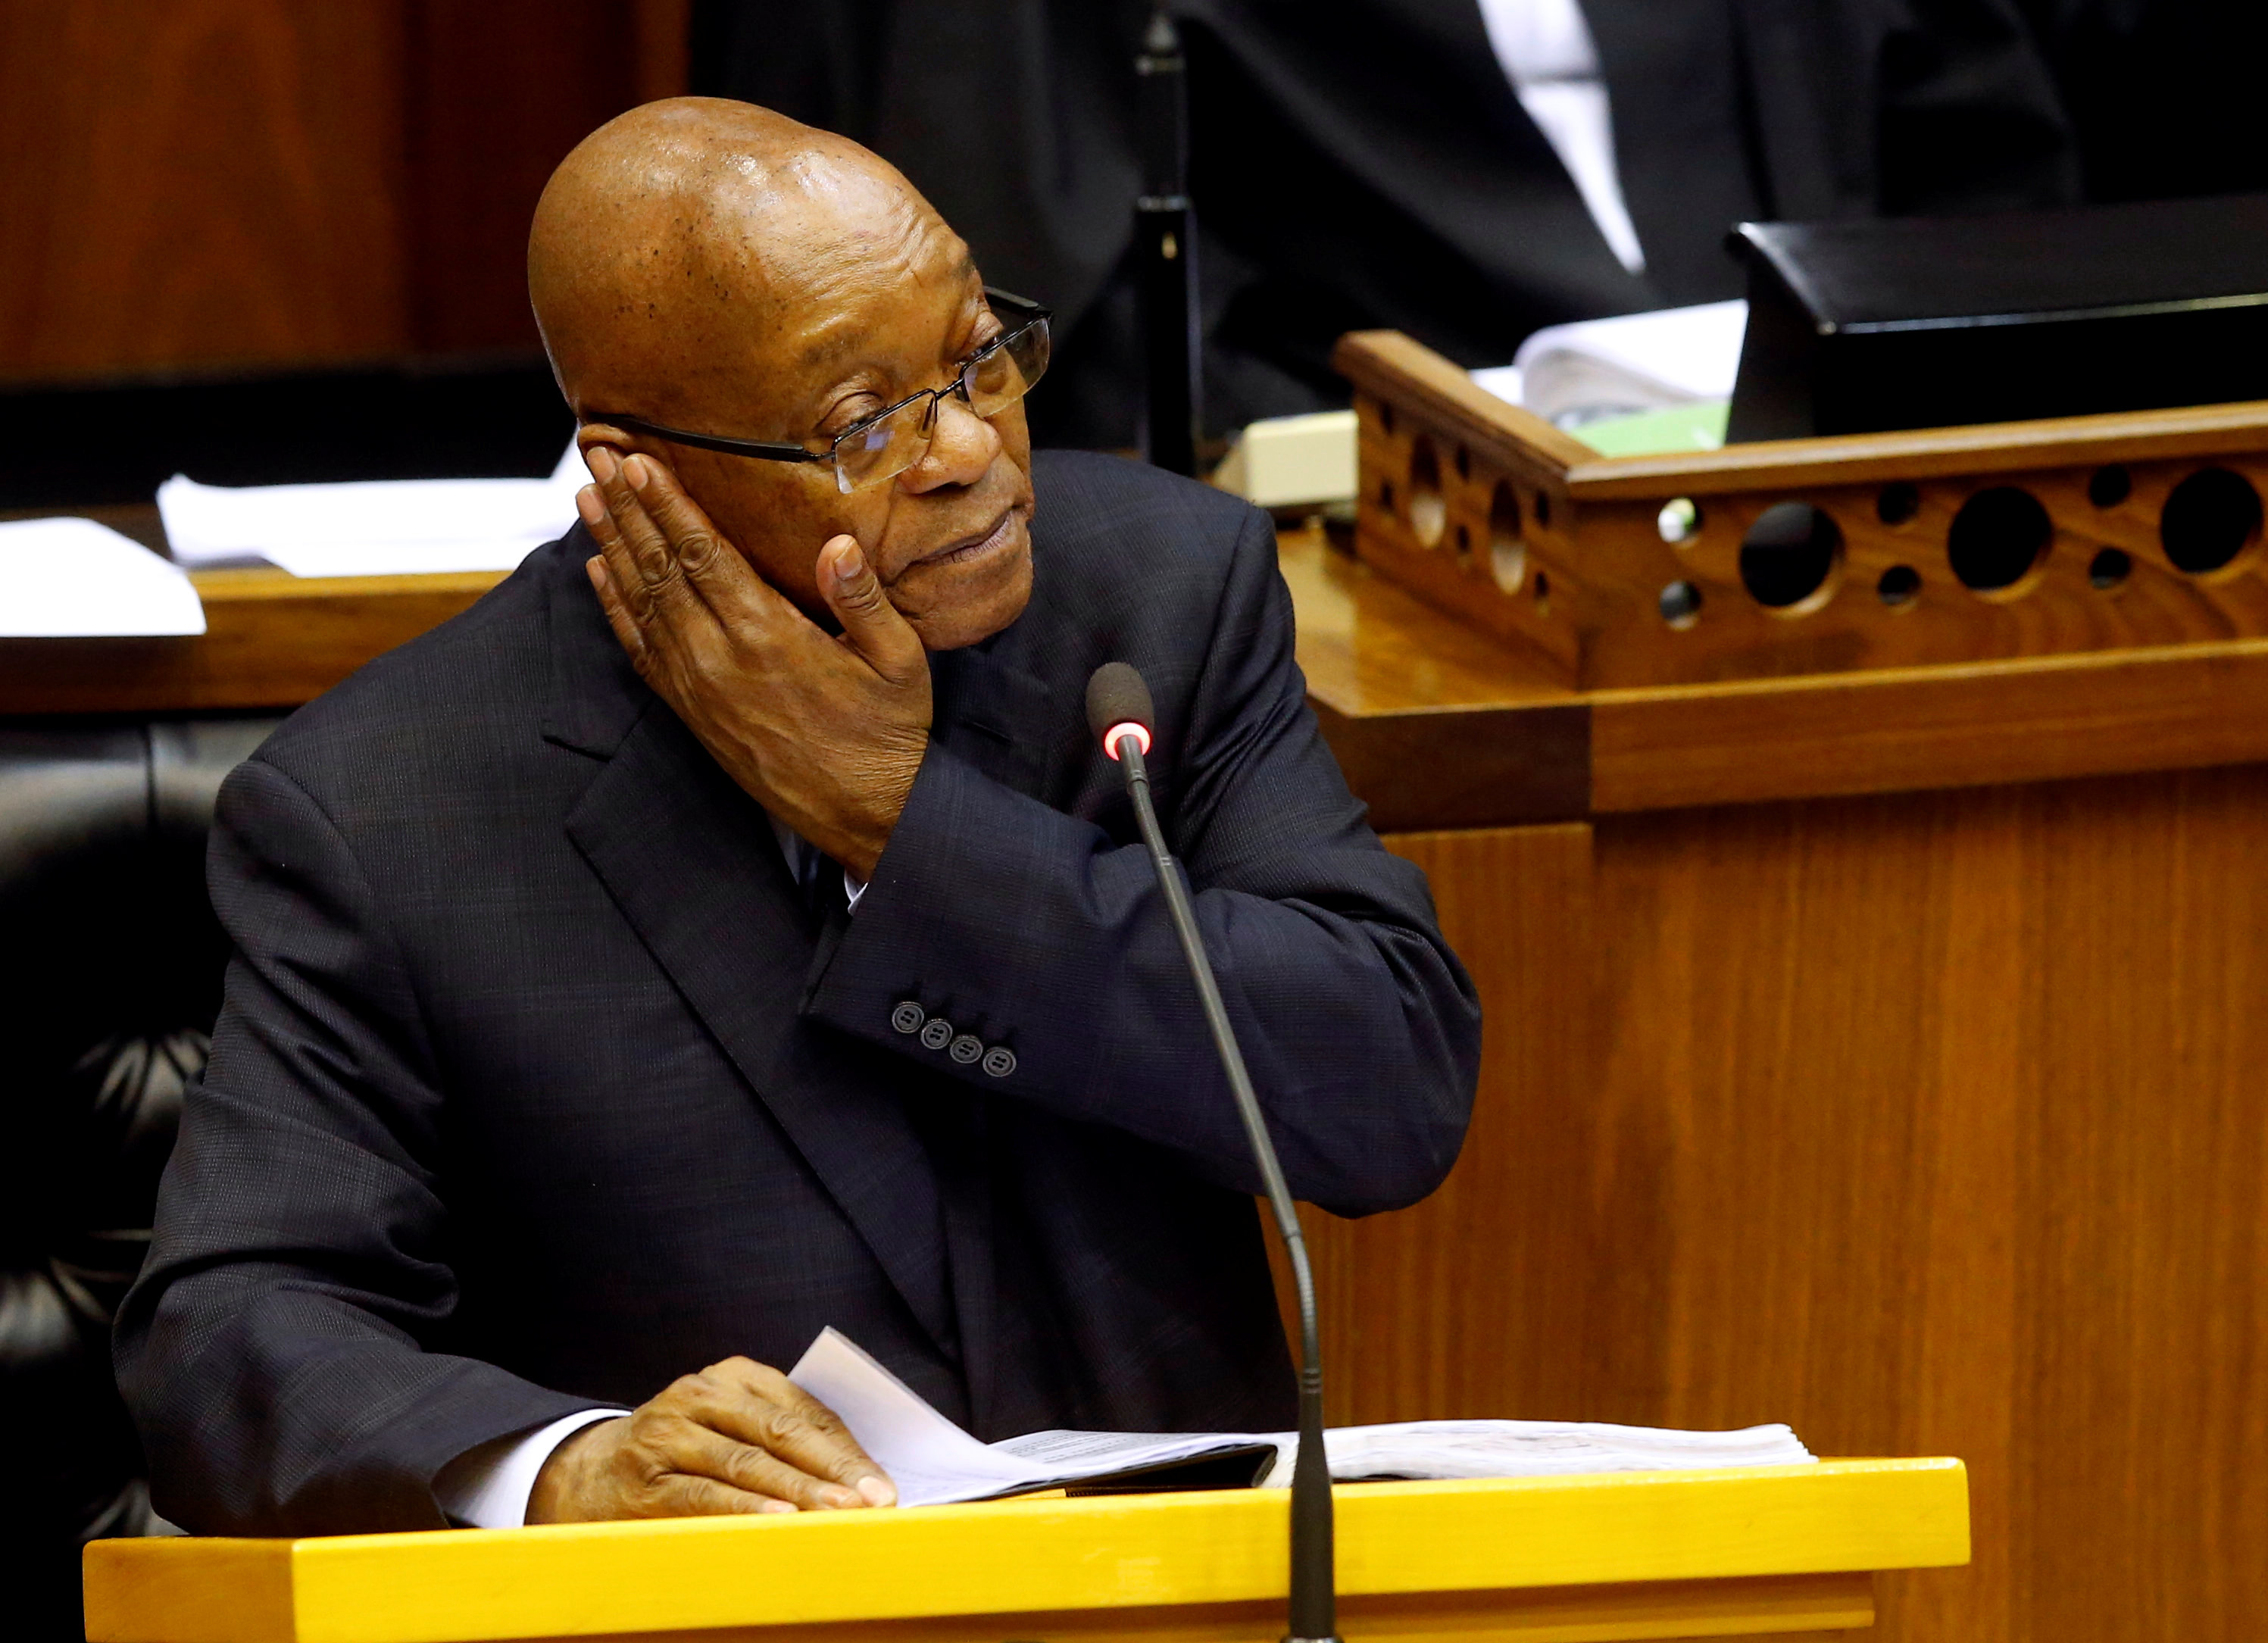 جاكوب زوما رئيس جنوب أفريقيا يتحدث إلى النواب فى البرلمان